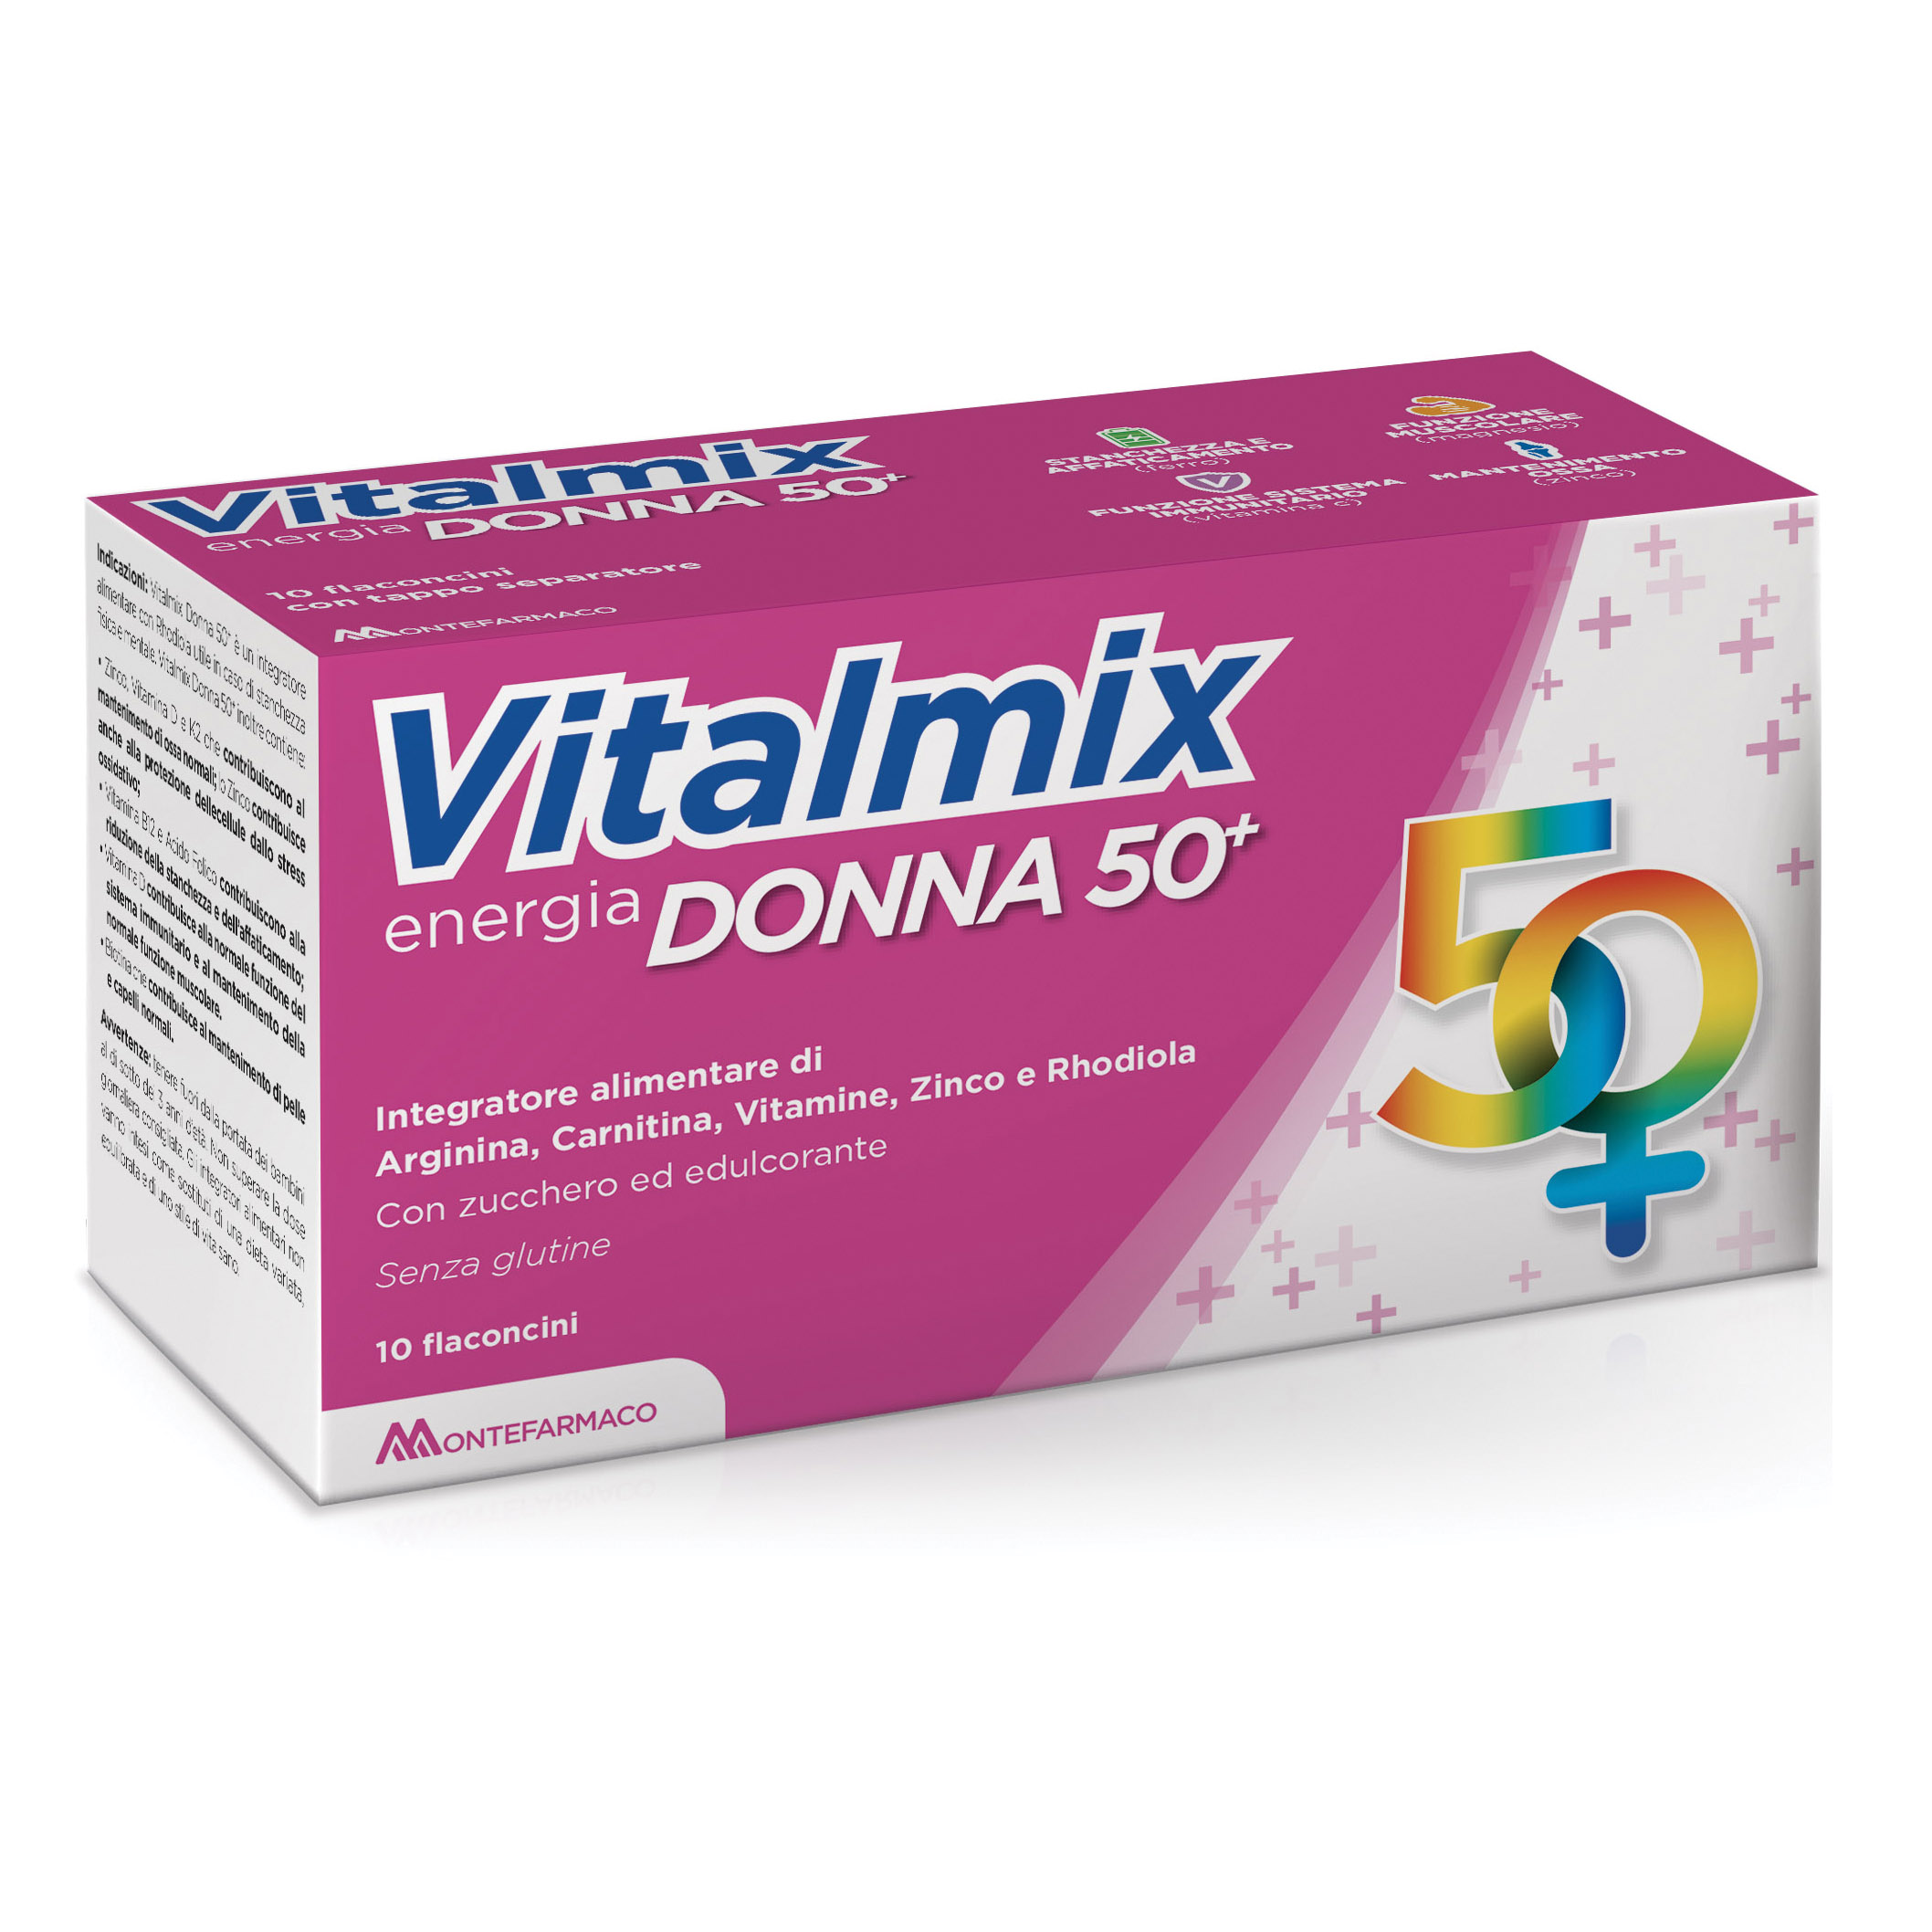 VITALMIX Donna 50+ 10Fl.